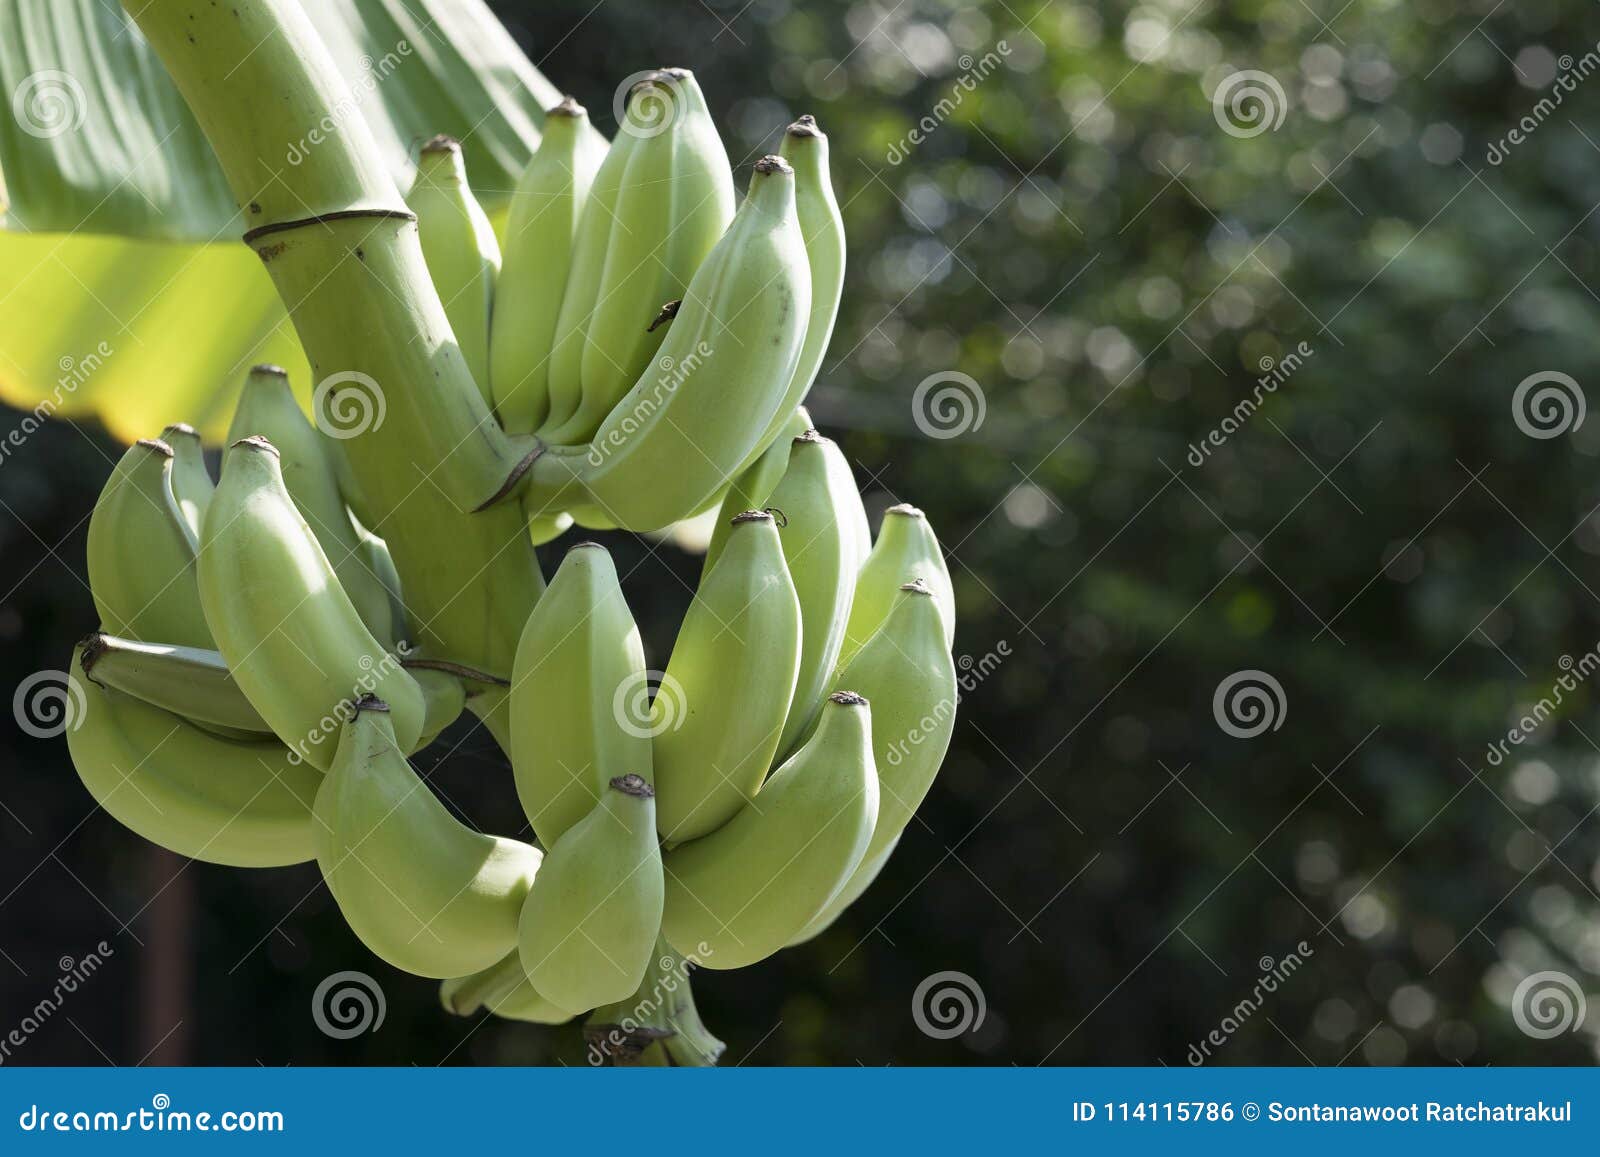 Banana verde na árvore com fundo do bokeh